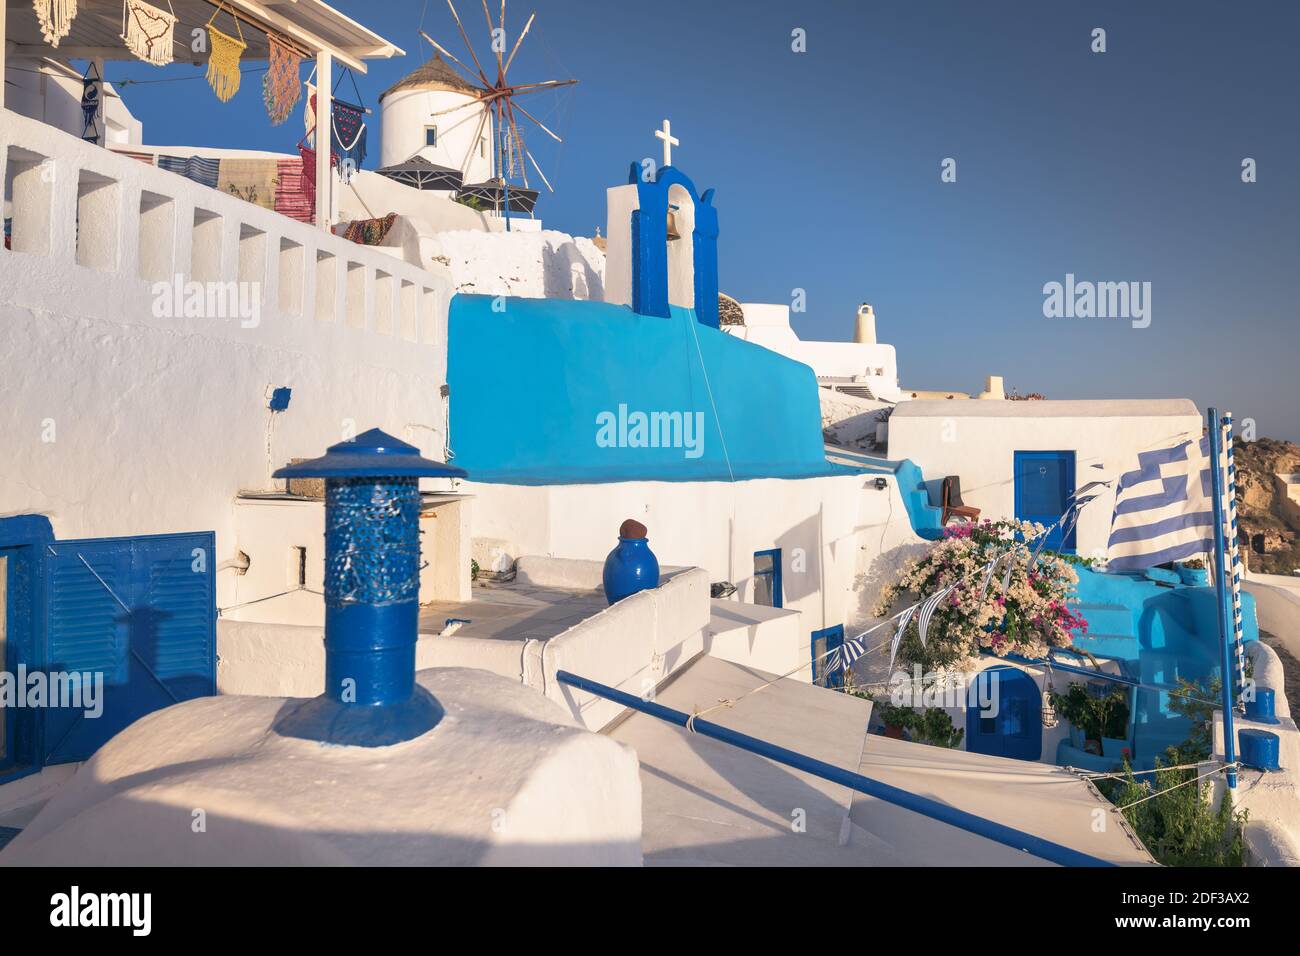 Aerila view of Oia at Santorini, Greece Stock Photo